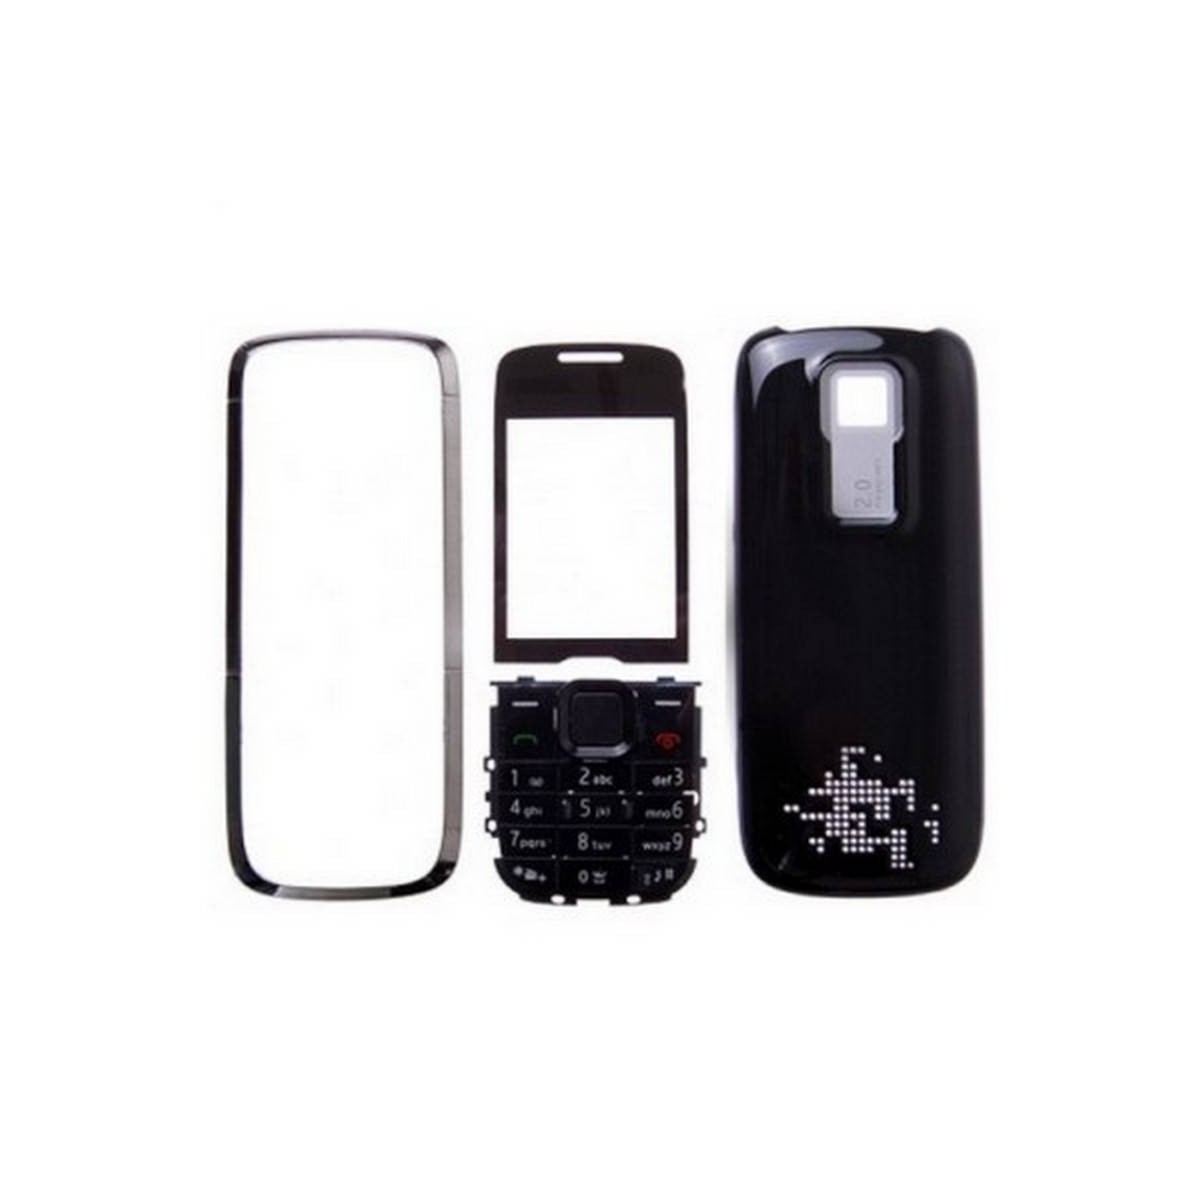 Carcasa Nokia 5130 Negro Completa 